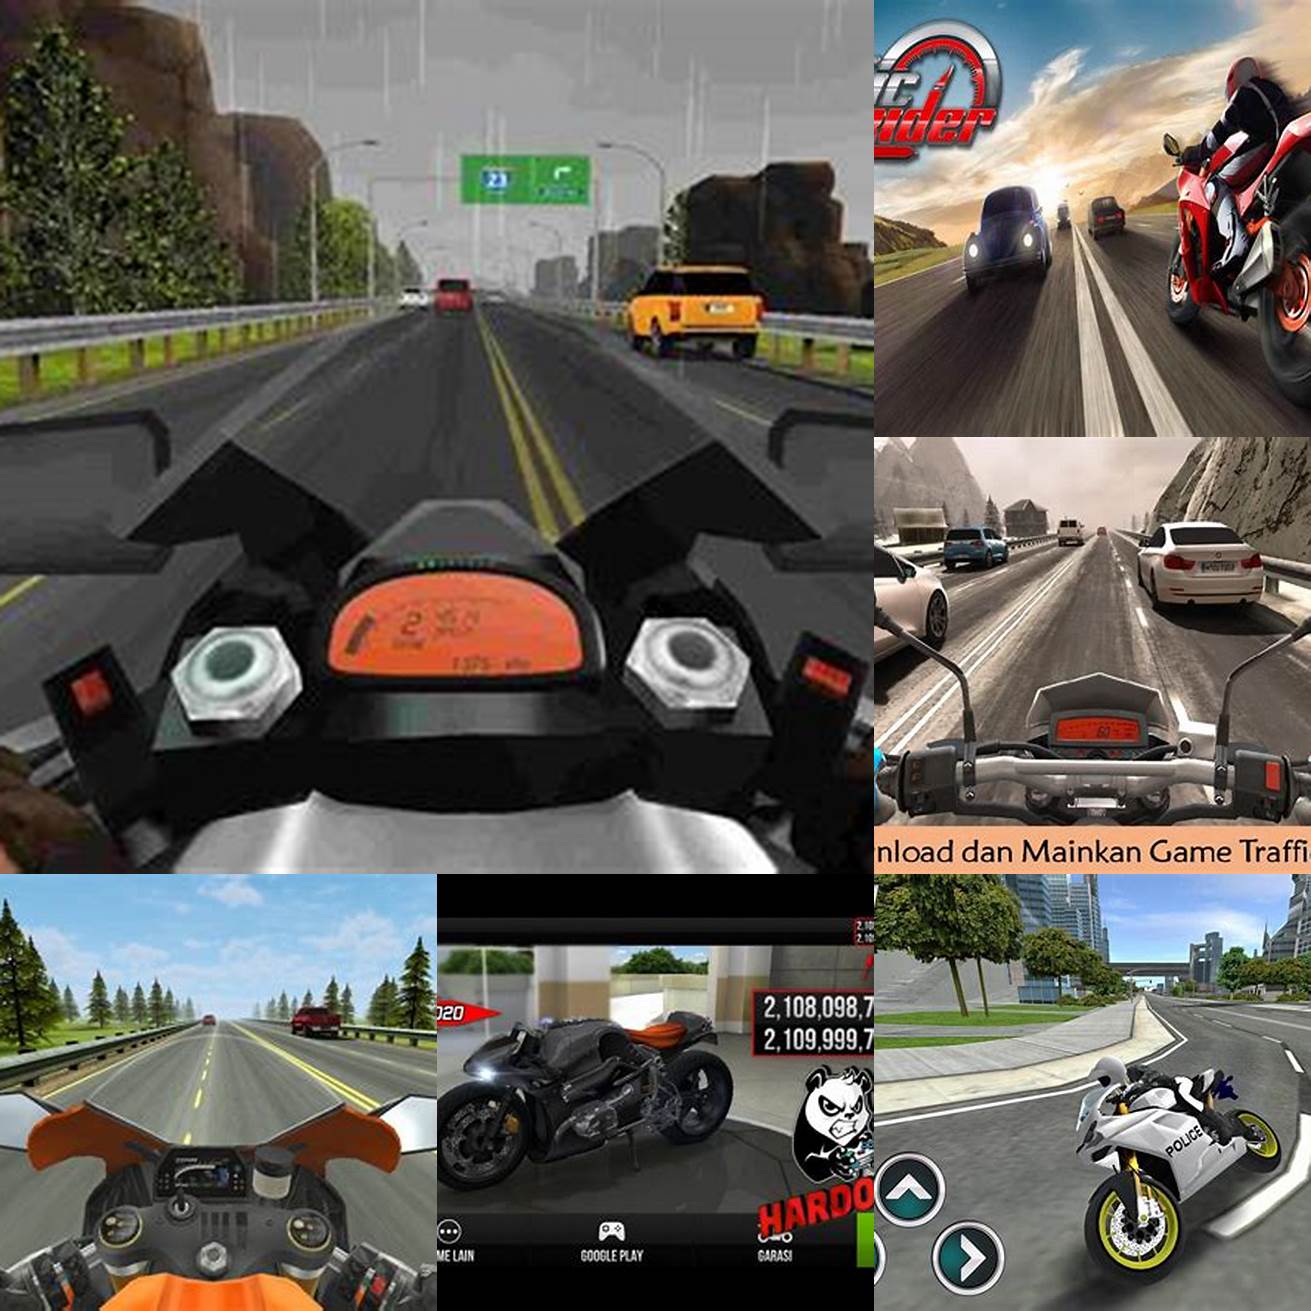 Keempat mainkan game Traffic Rider Mod dengan fitur-fitur yang lebih menarik